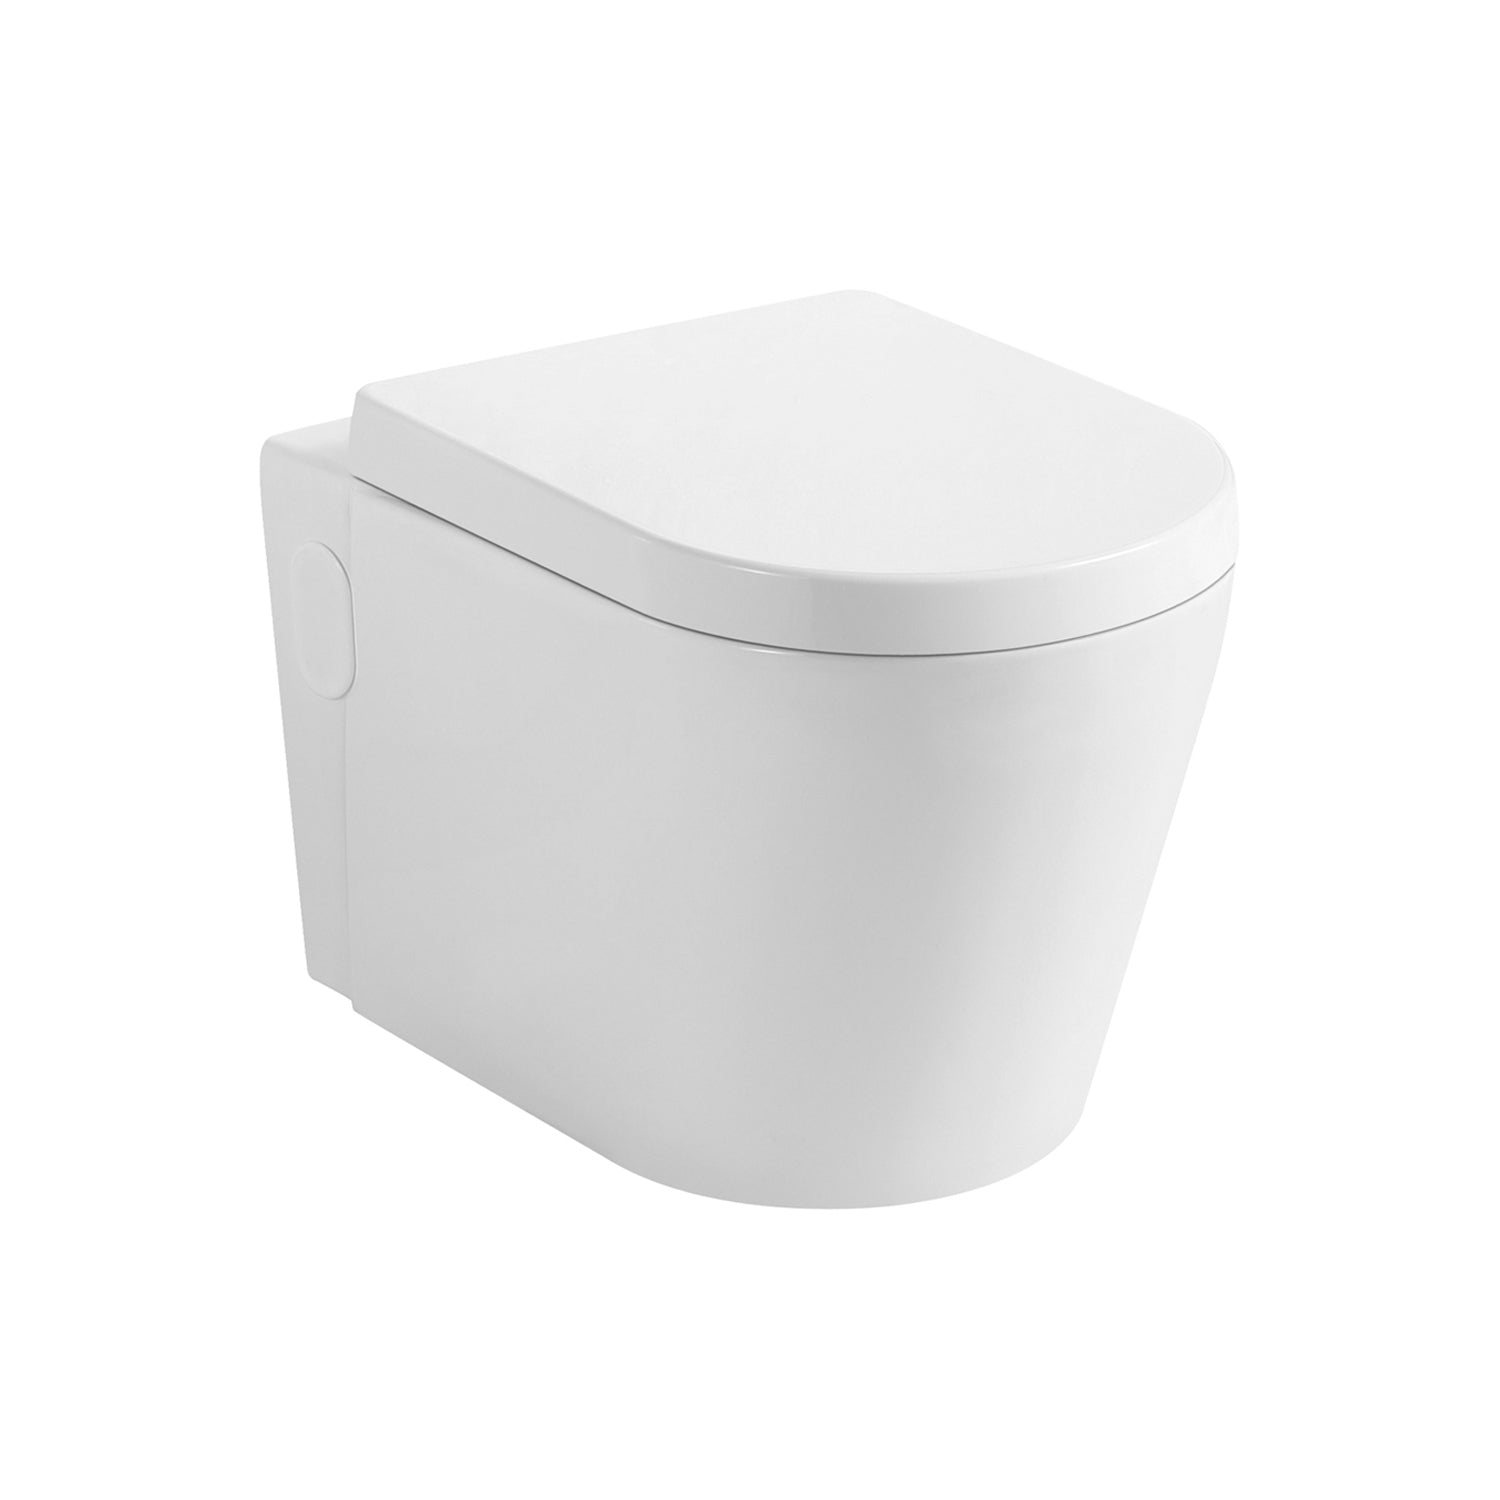 DAX Inodoro ovalado moderno de una pieza, montaje en pared con asiento de cierre suave y doble descarga de alta eficiencia, cerámica, acabado blanco brillante, altura 12-3/5 pulgadas (BSN-CL11025-17)